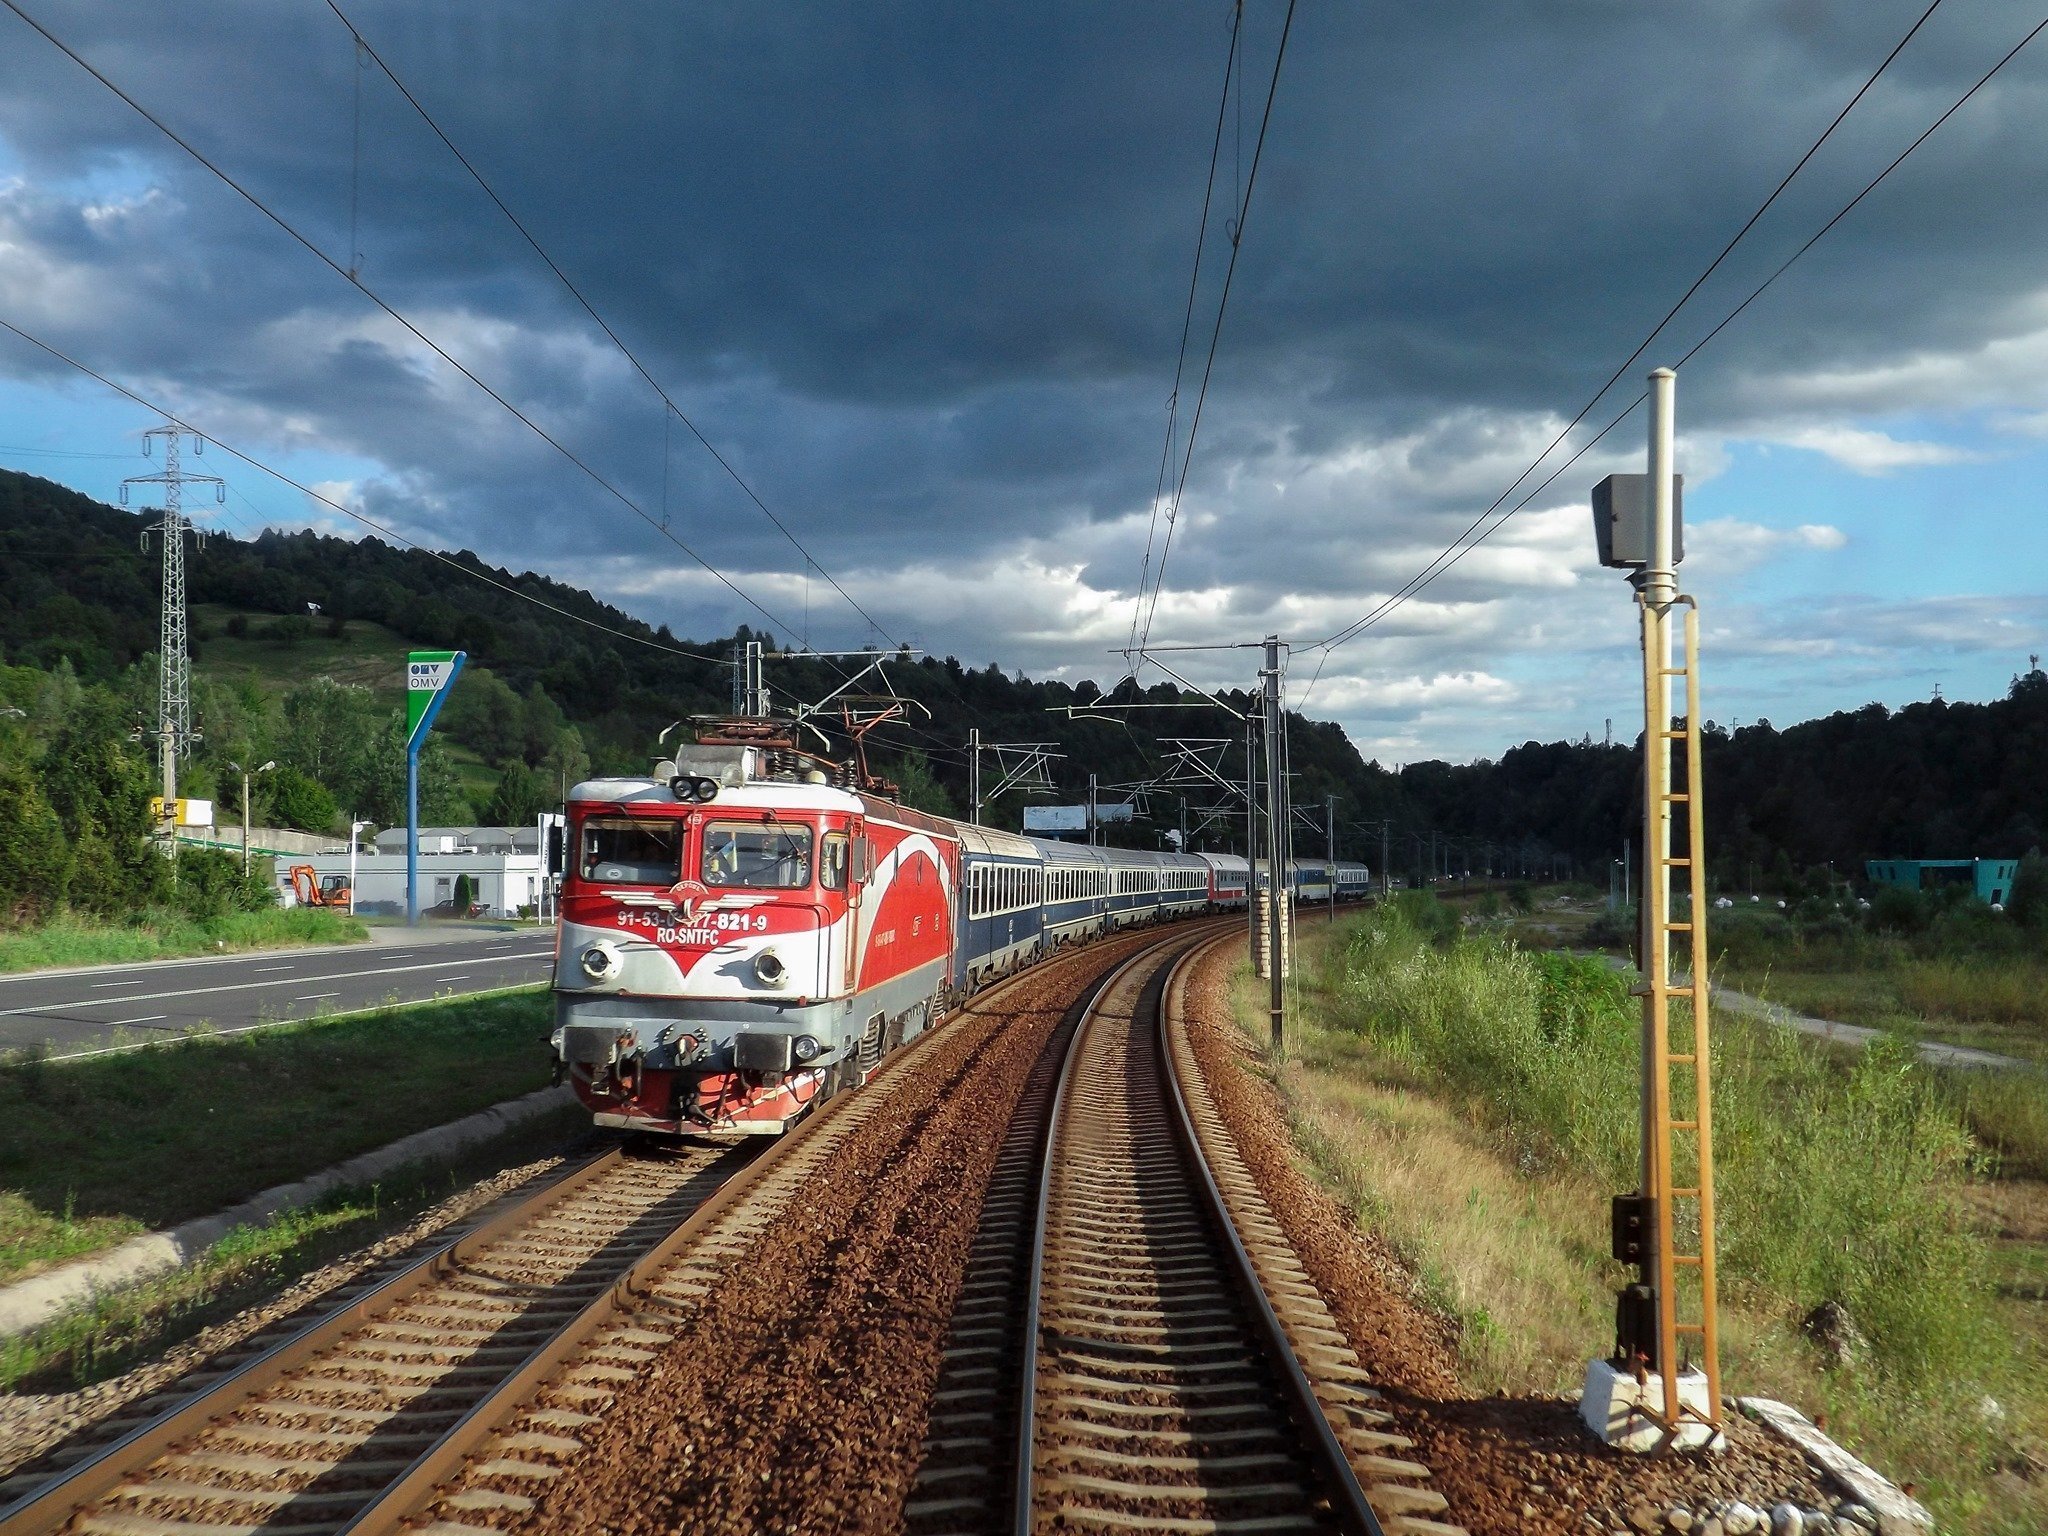 Două trenuri noi vor pleca din București spre Brașov, Constanța, Iași și Suceava. Care va fi mersul trenurilor Tomis și Ștefan Cel Mare Expres